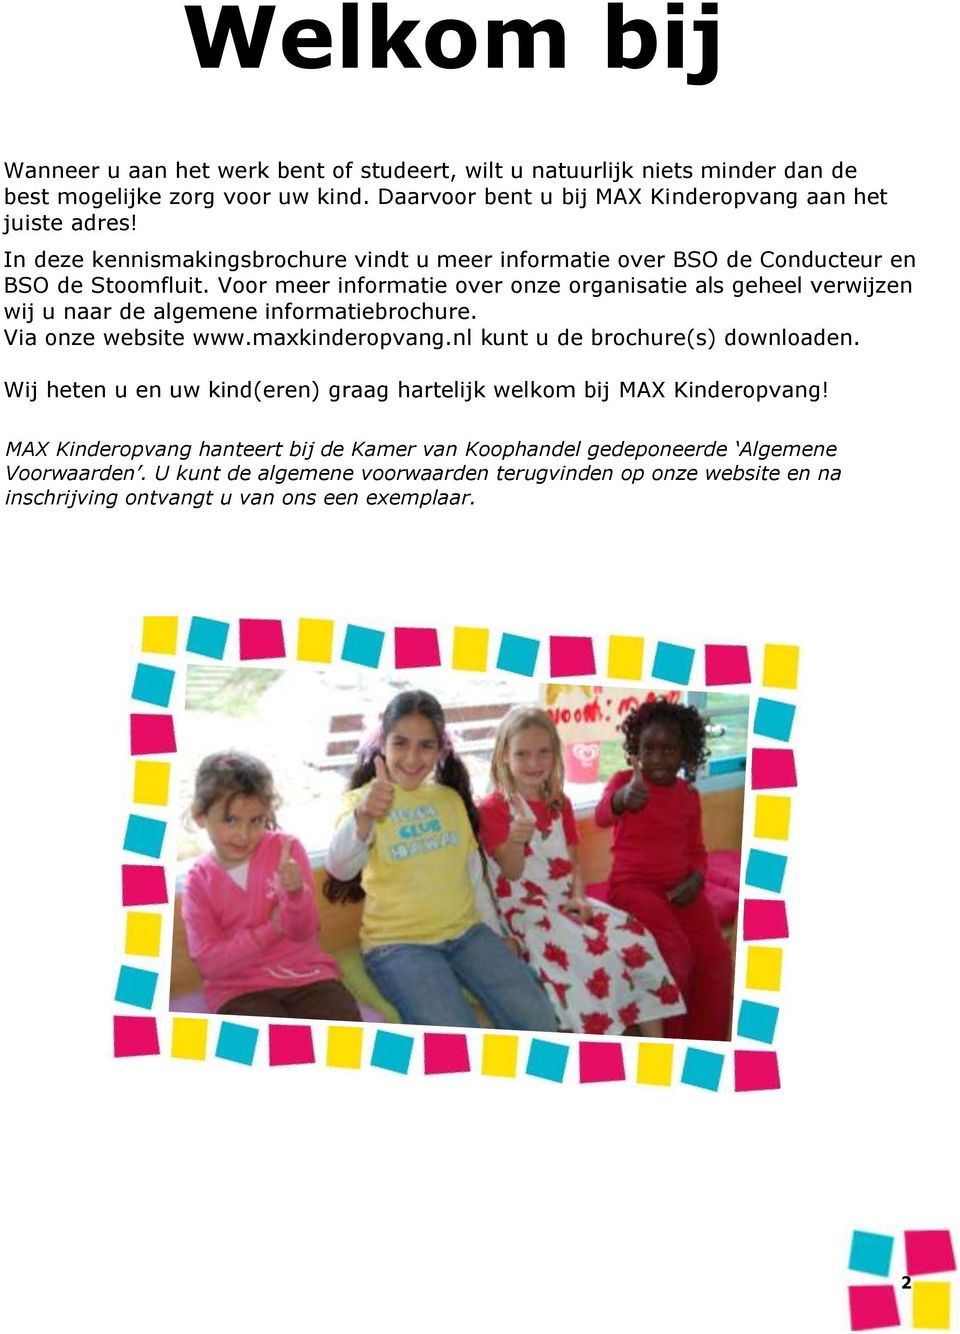 Voor meer informatie over onze organisatie als geheel verwijzen wij u naar de algemene informatiebrochure. Via onze website www.maxkinderopvang.nl kunt u de brochure(s) downloaden.